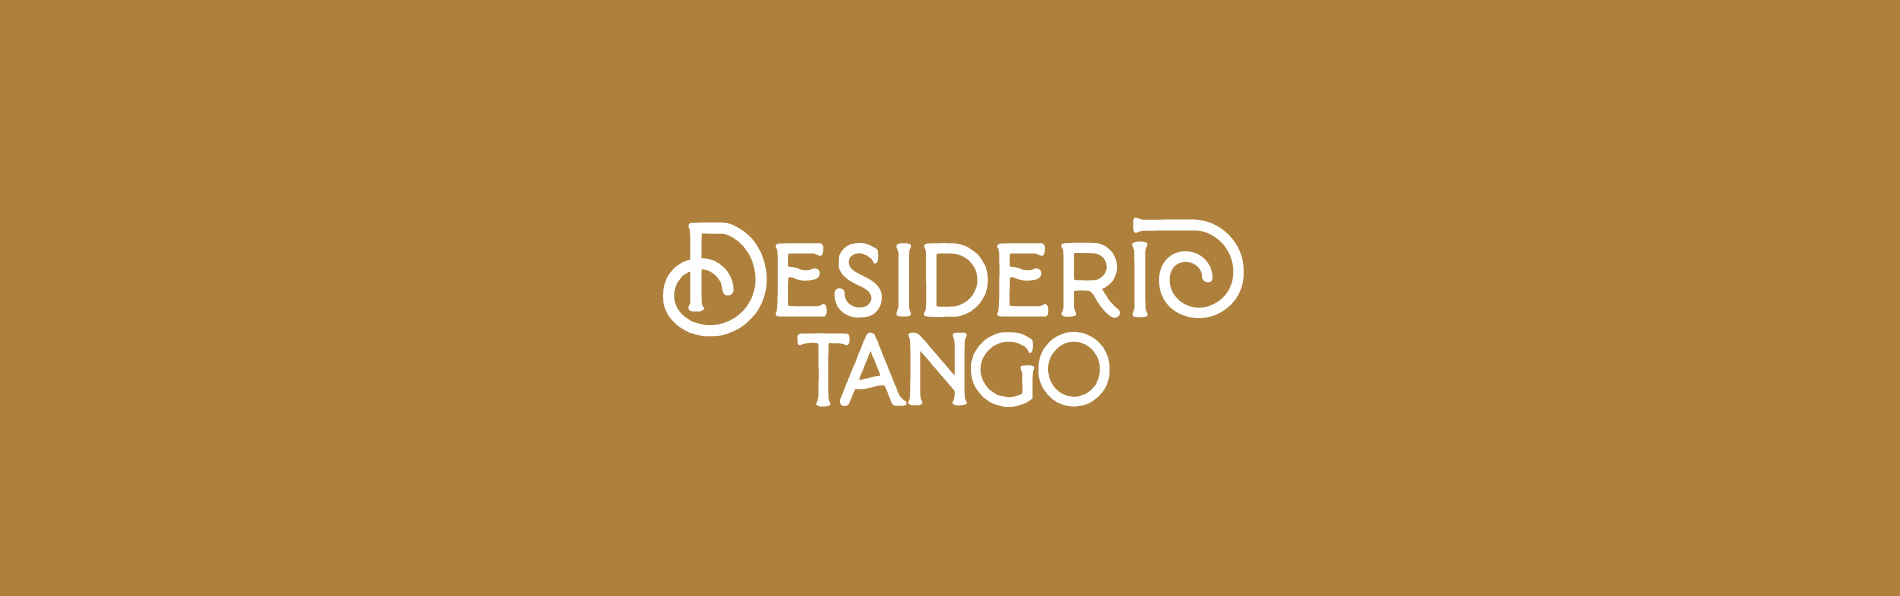 Desiderio Tango